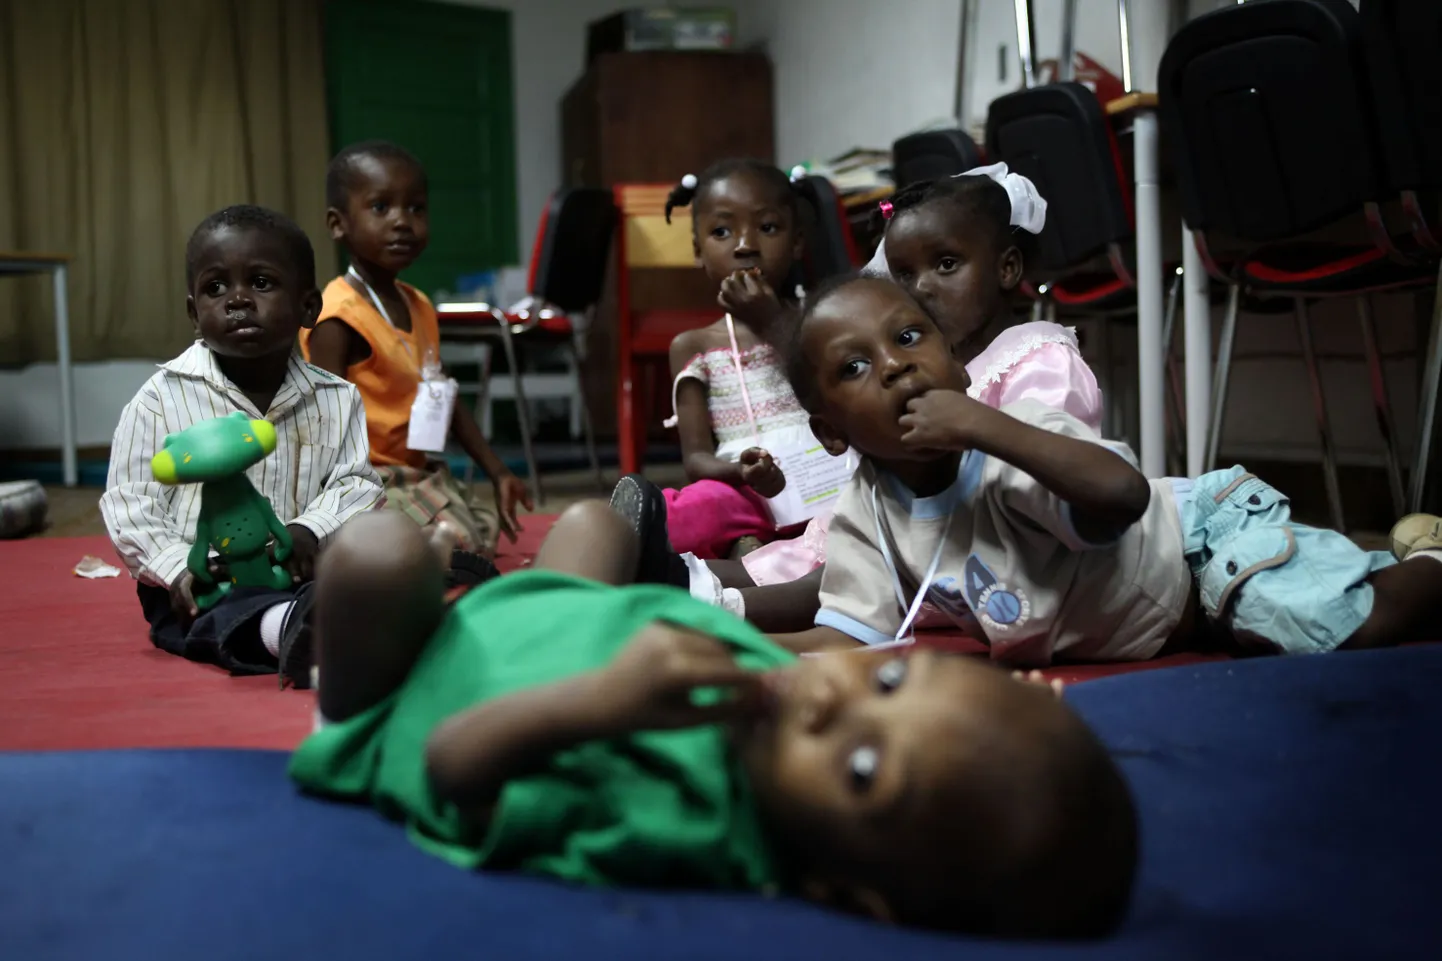 Haiti maavärina tagajärel orvuks jäänud lapsed, kes viiakse Prantsusmaale.